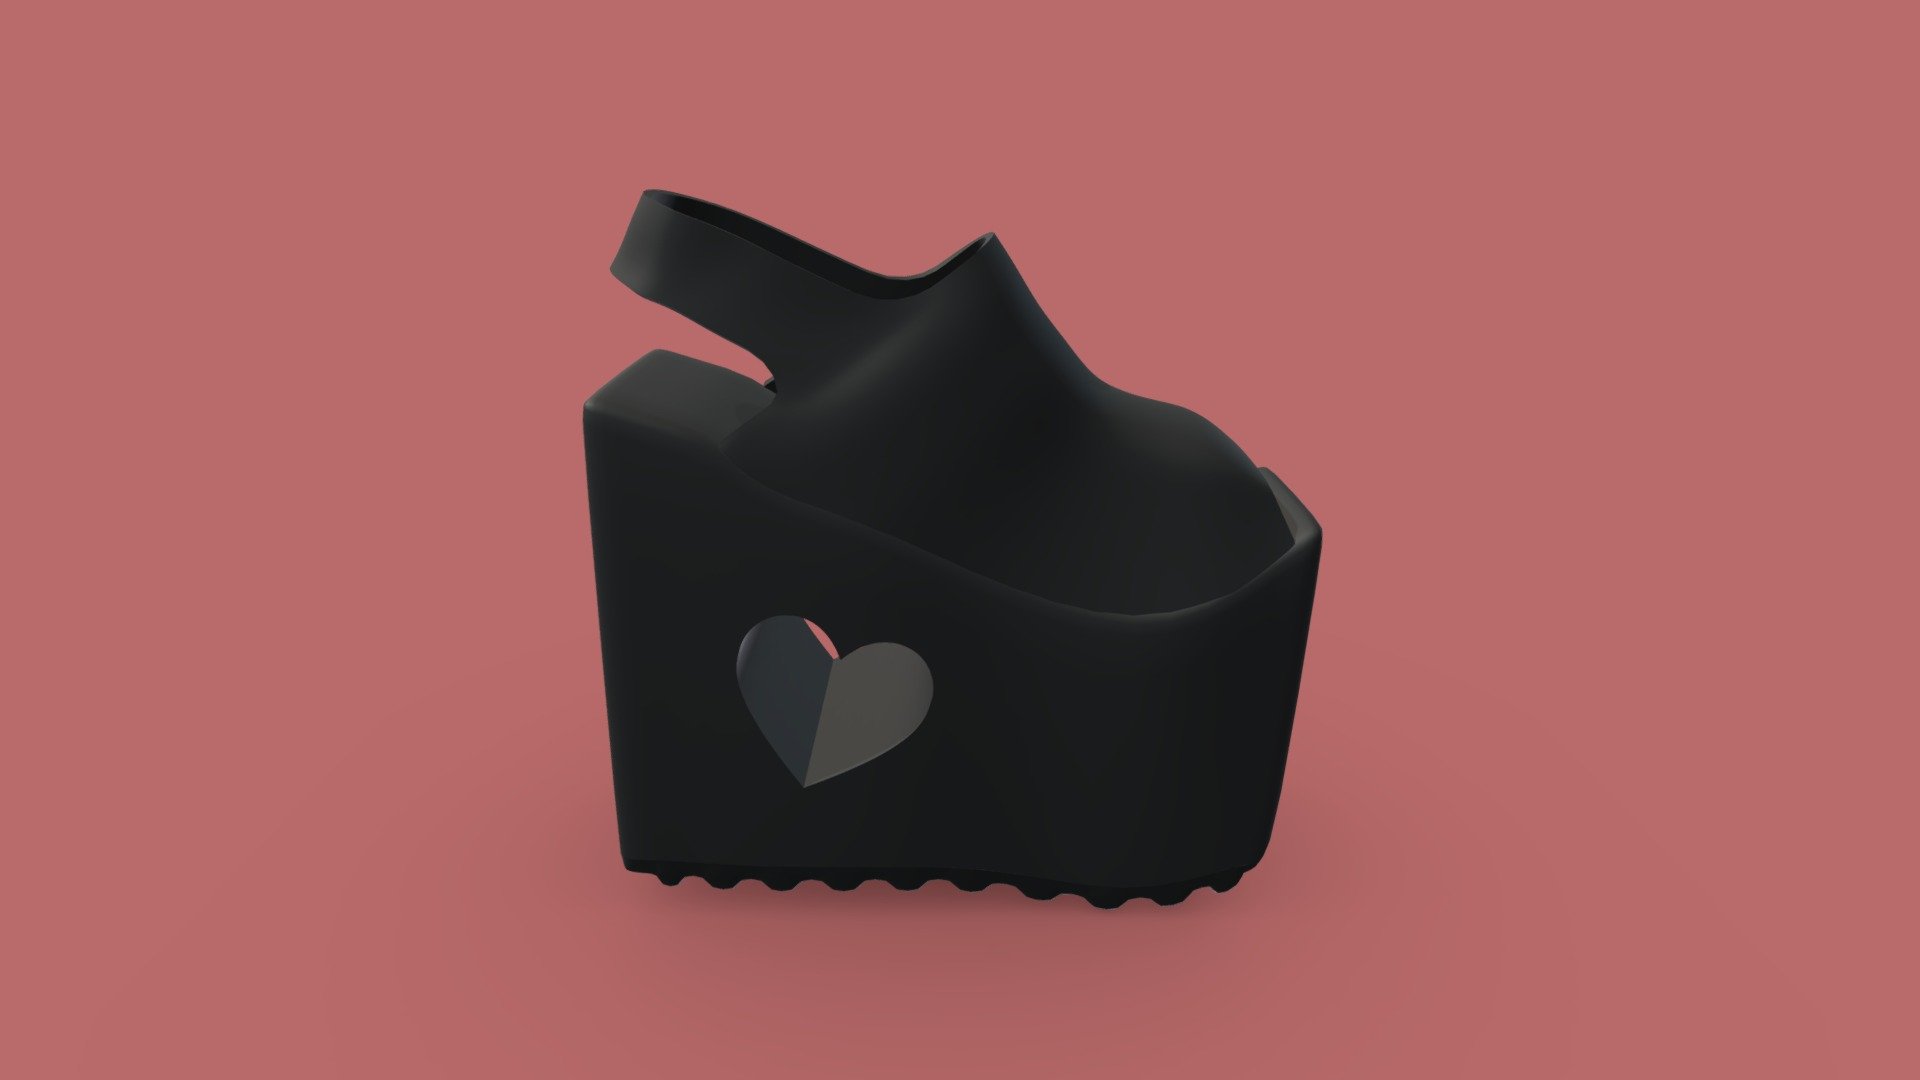 heels with heart shape inside the base - heart heels - 3D model by Talia (@ronit74000) 3d model